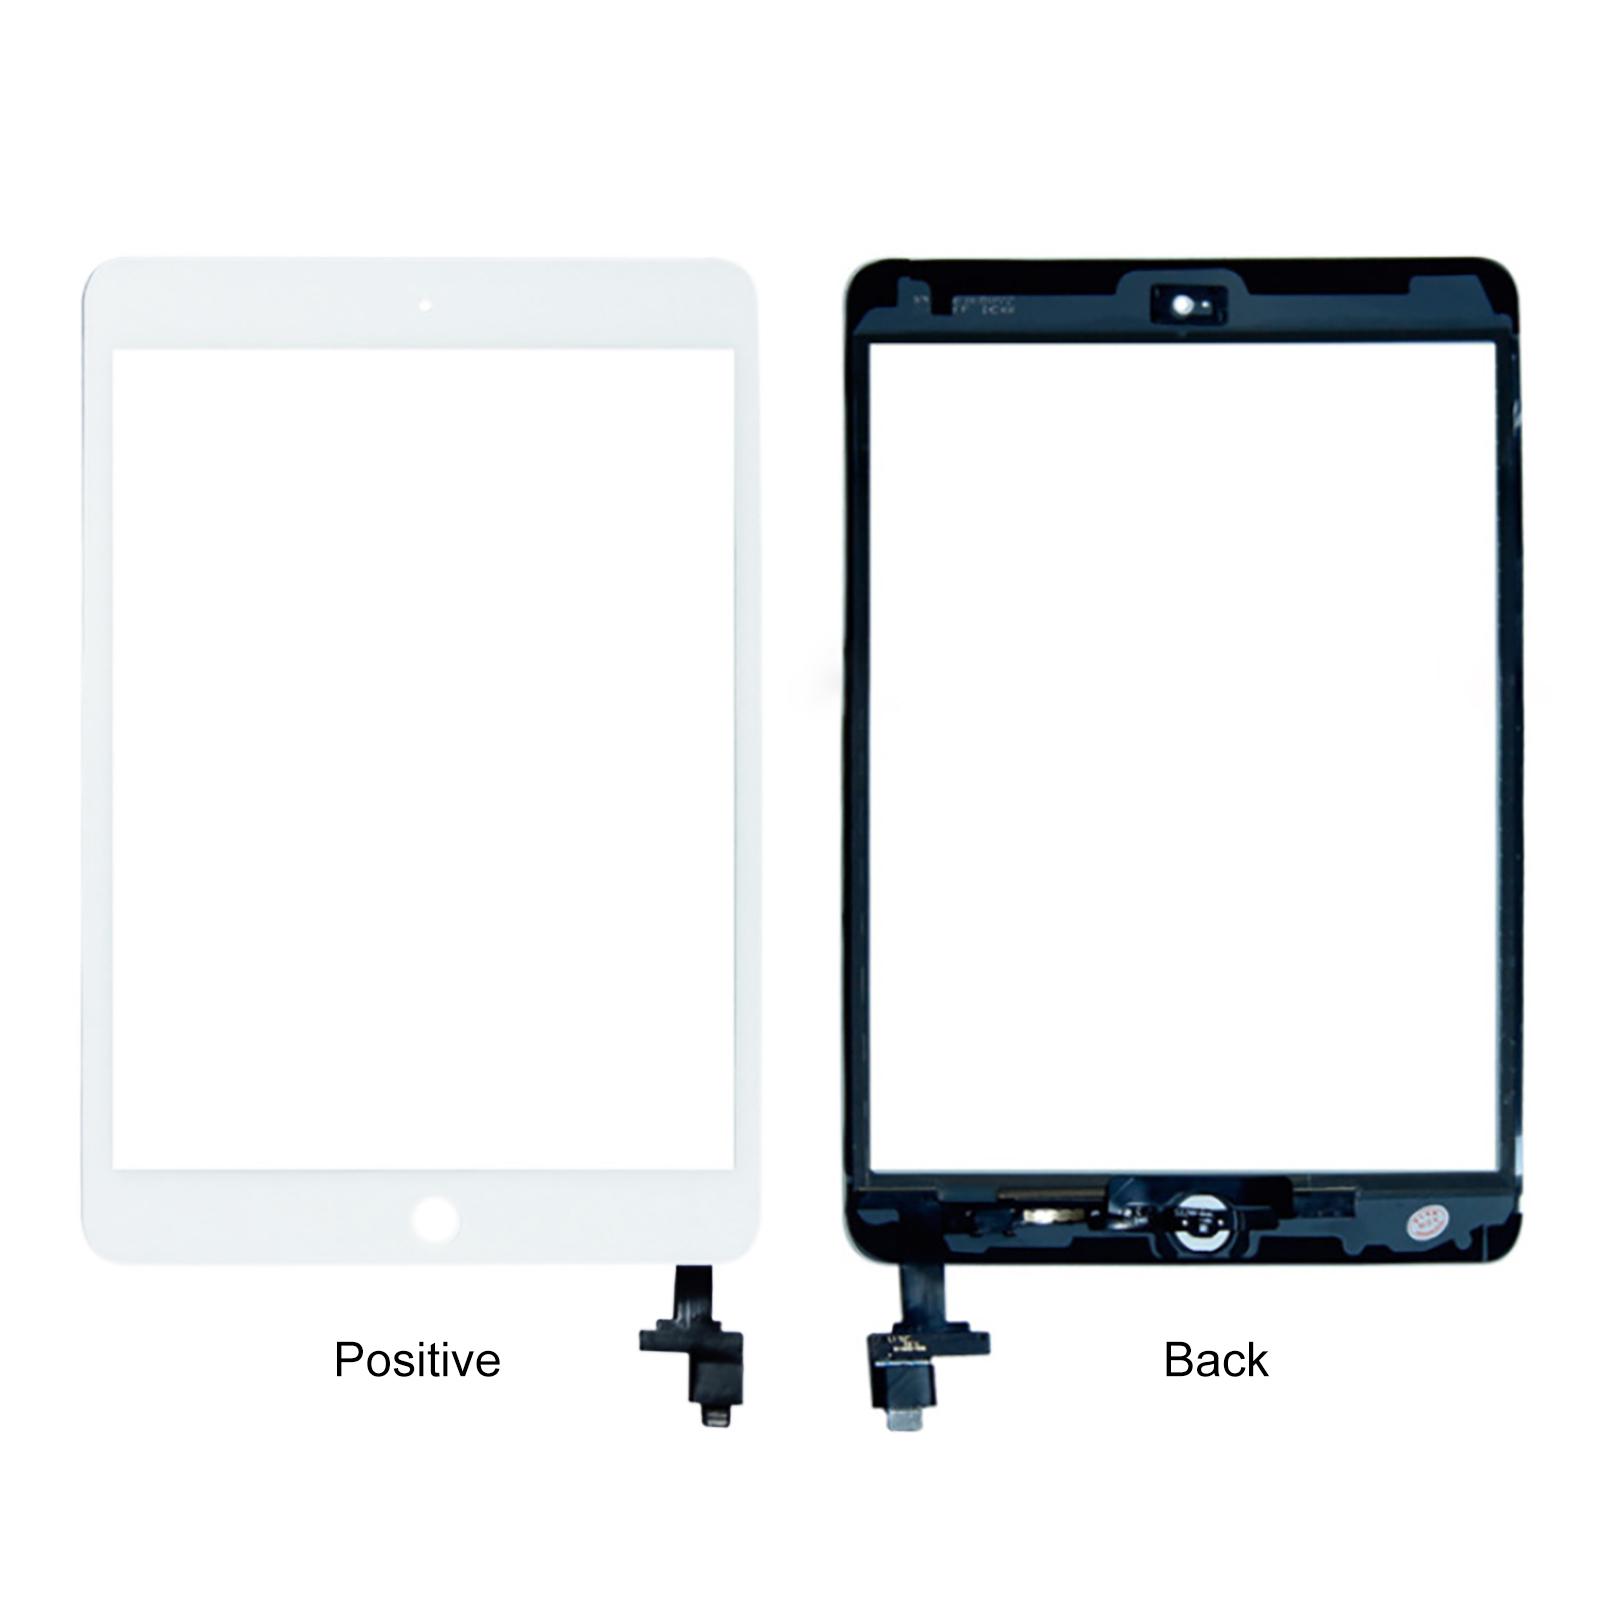 Изображение товара: Износостойкое внешнее стекло для сенсорного экрана TFT, набор инструментов для замены для iPad Mini 1/2, Ремонт сенсорного экрана